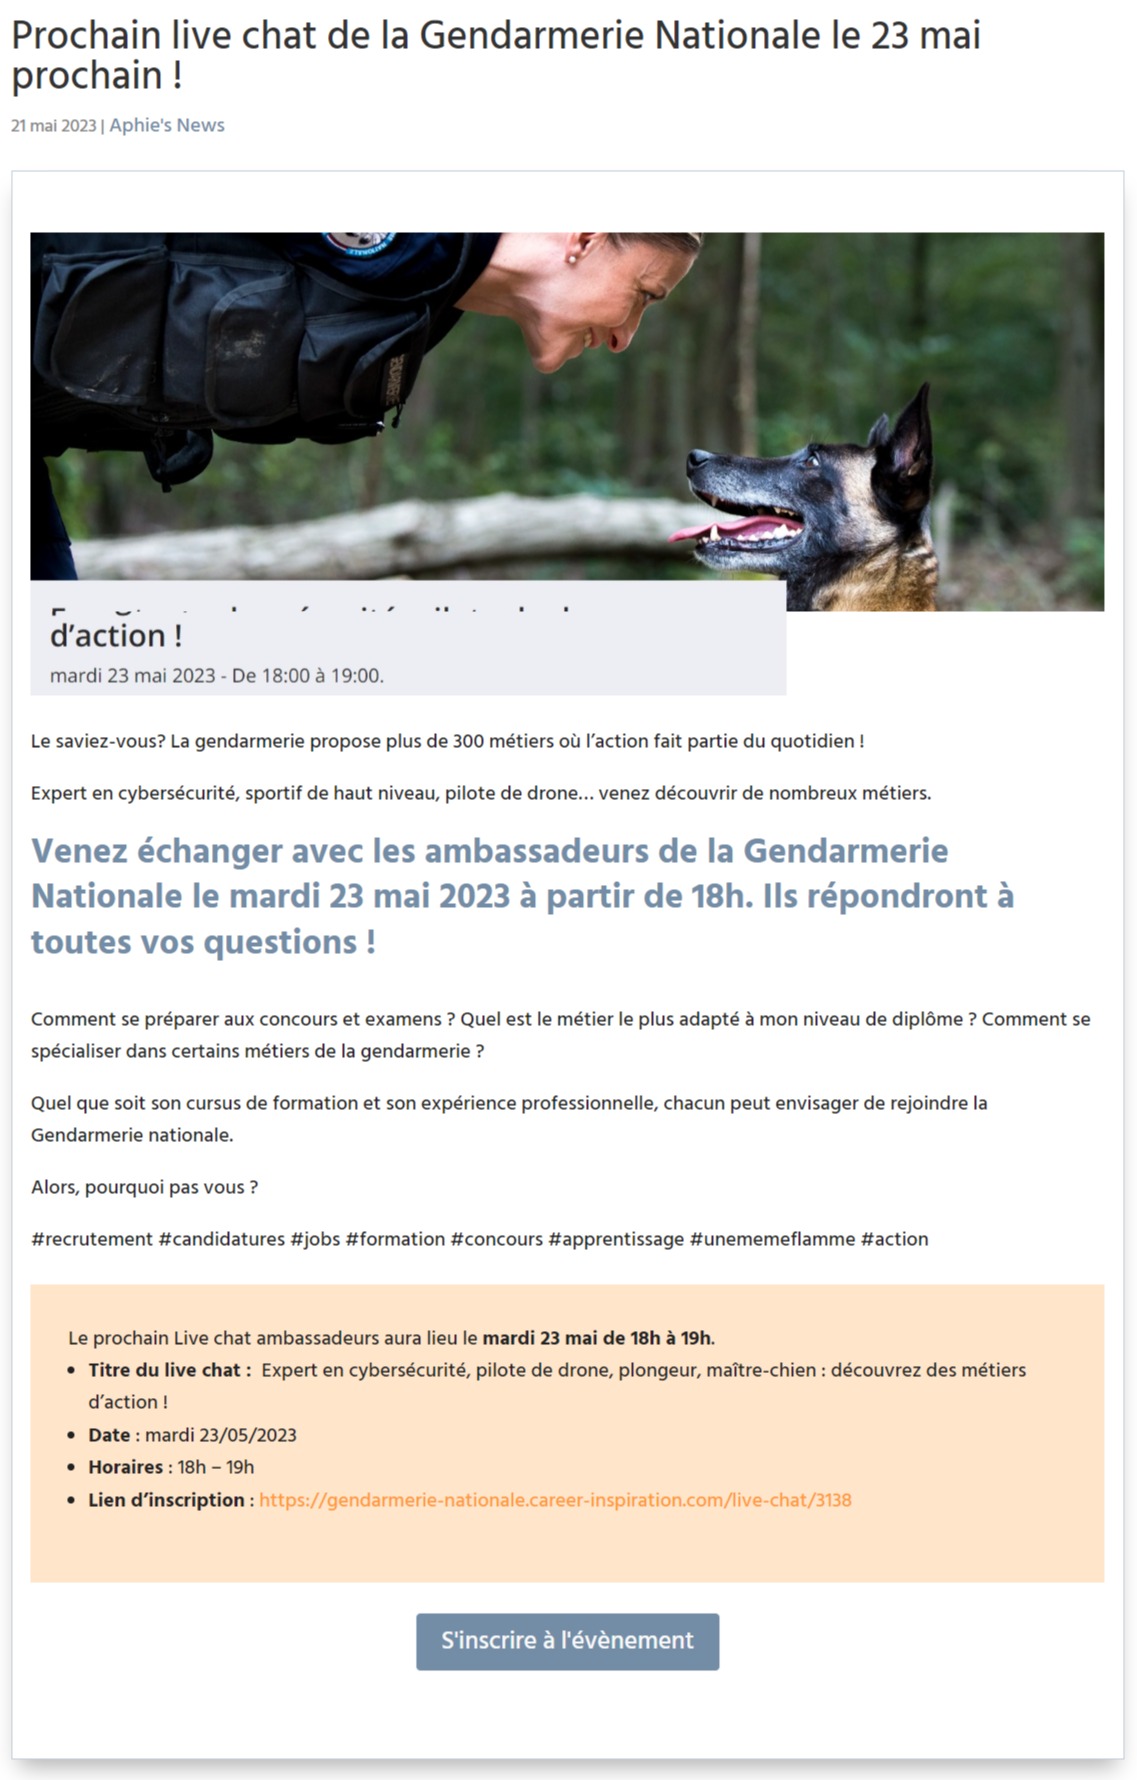 Prochain live chat de la Gendarmerie Nationale le 23 mai prochain !